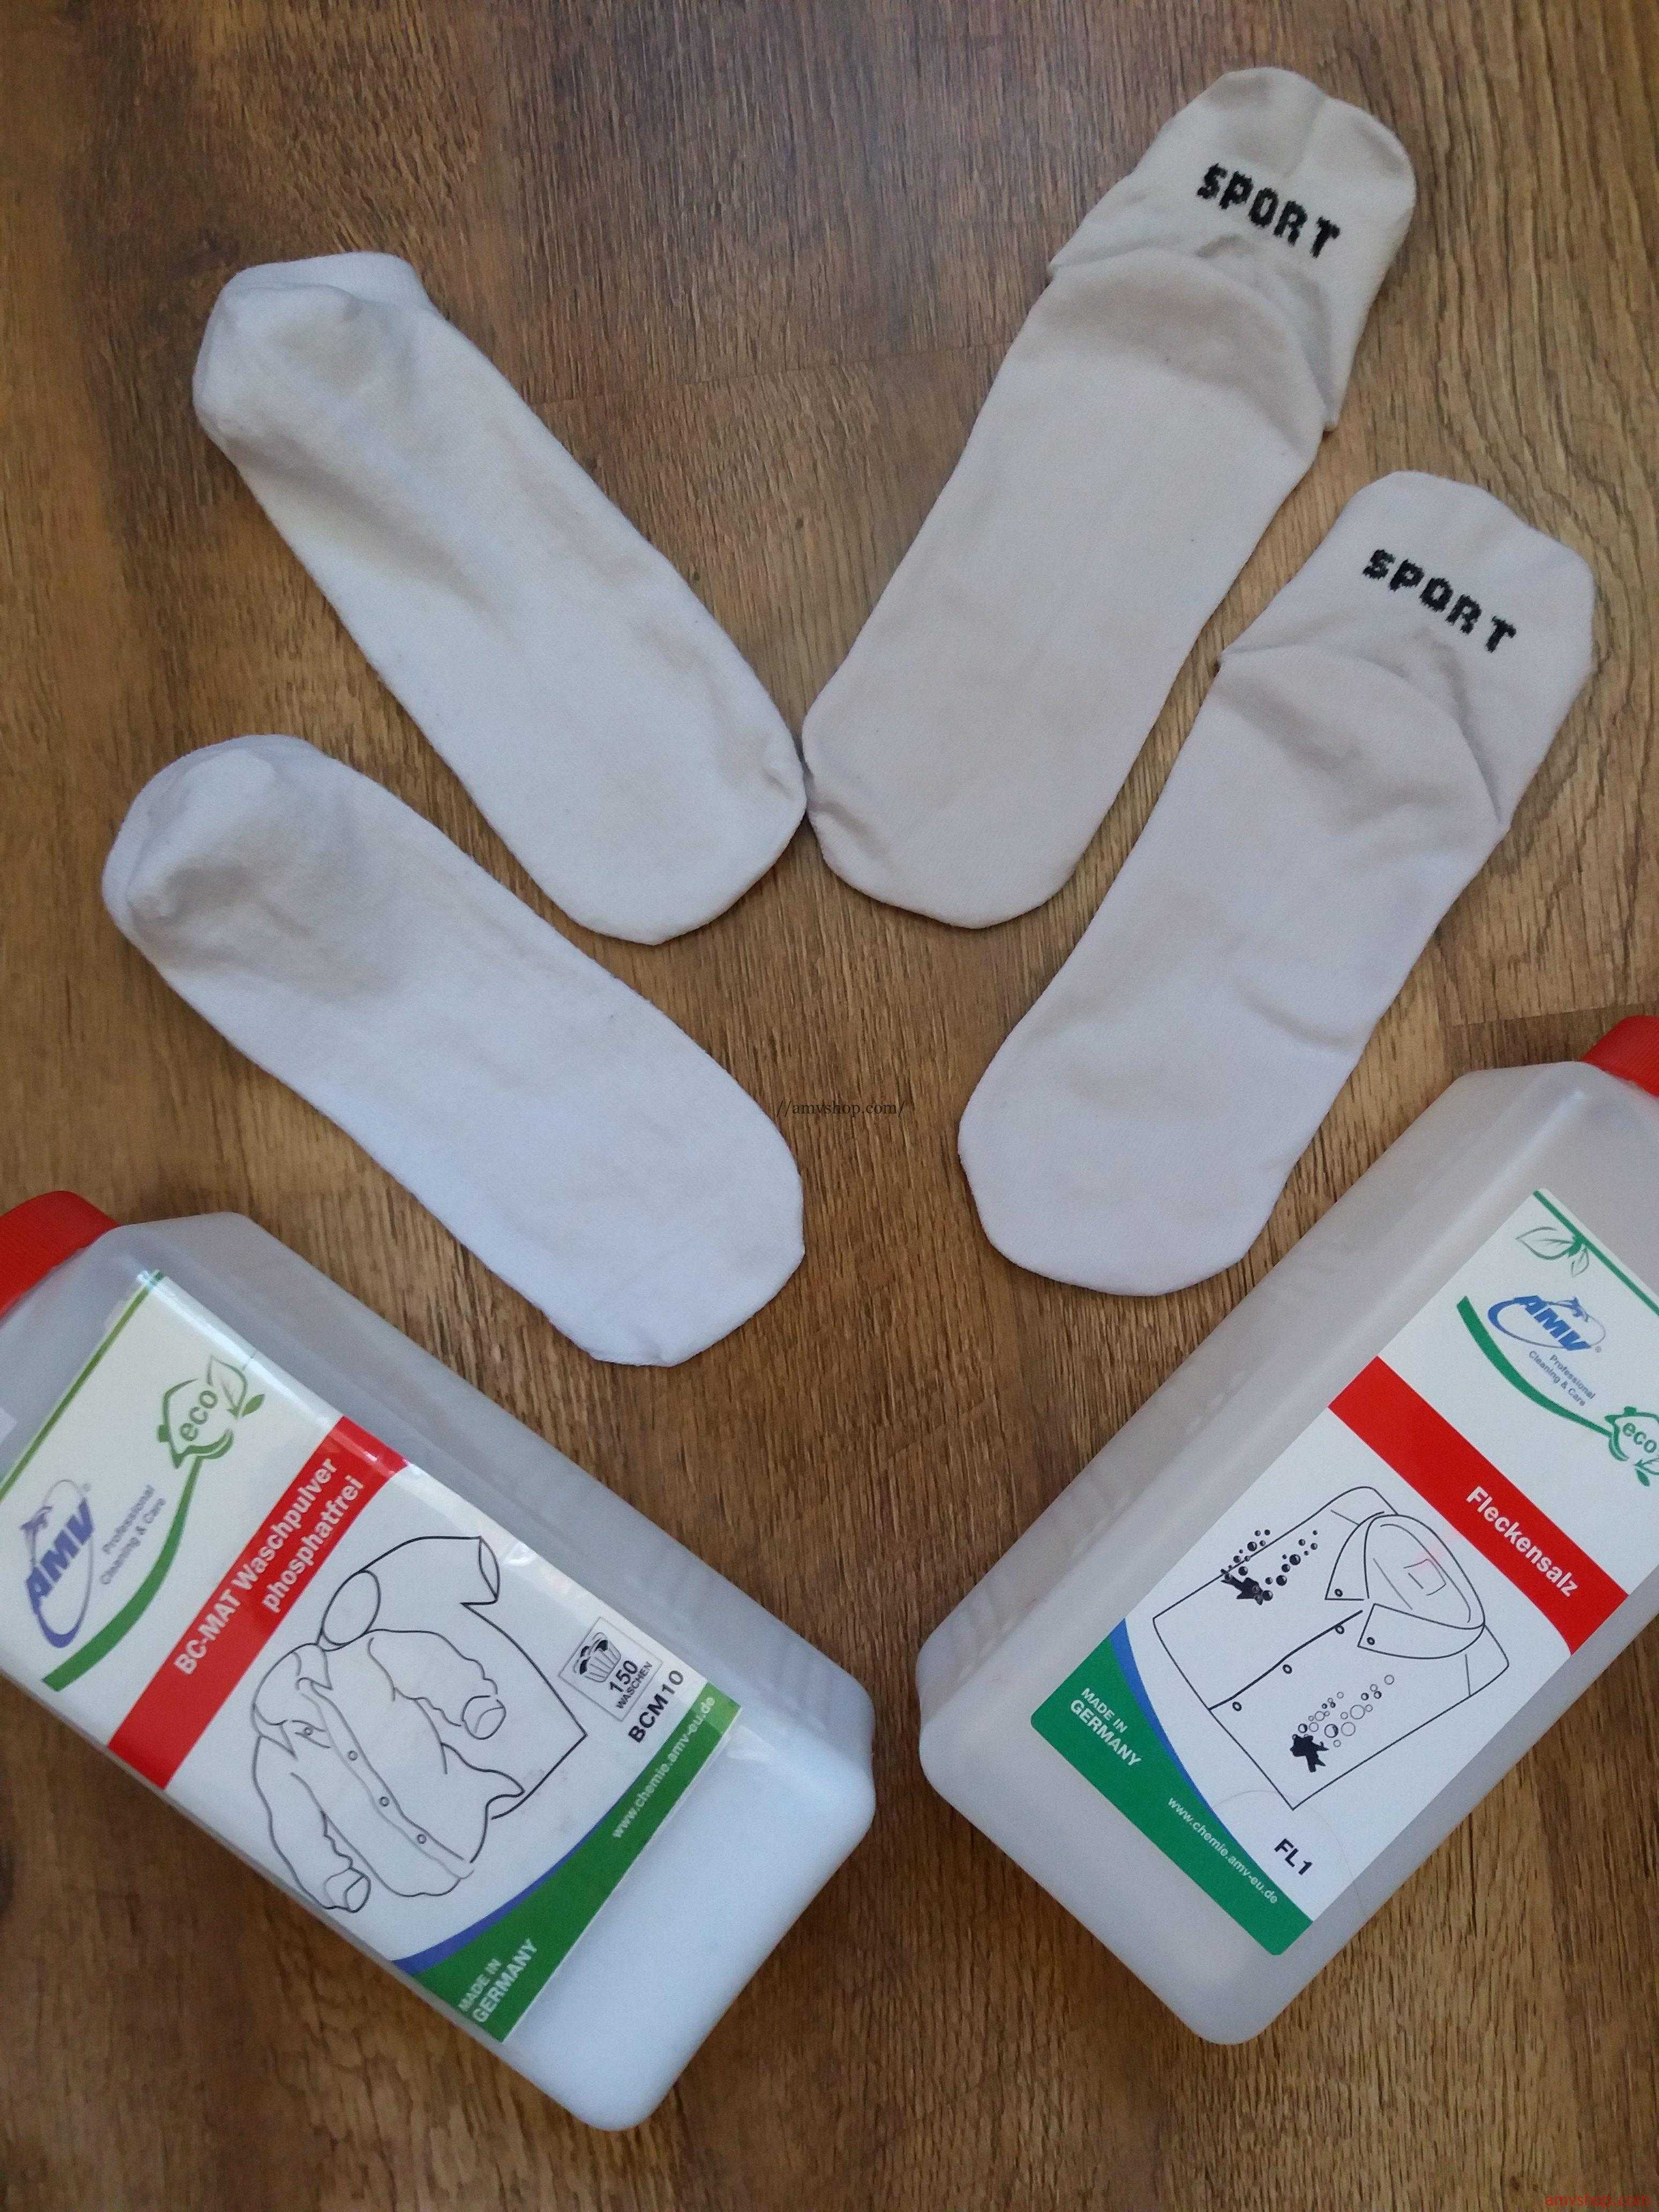 Пошаговая инструкция, как отстирать белые носки в домашних условиях руками без использования машинки